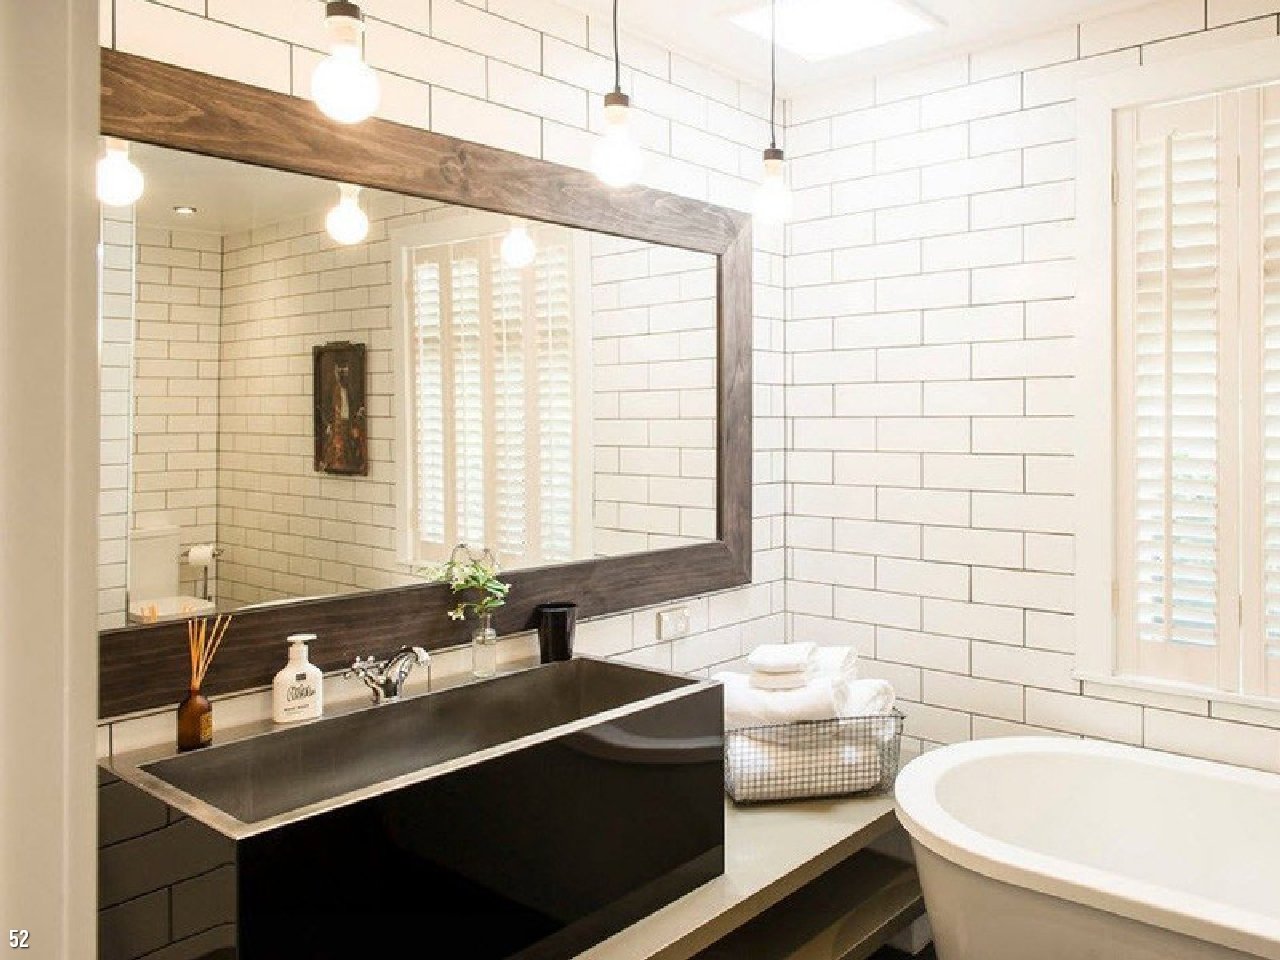 Зеркала в плитке ванной комнаты. Ванная комната. Дизайн ванной. Ванная комната интерьер. Зеркало в интерьере ванной.